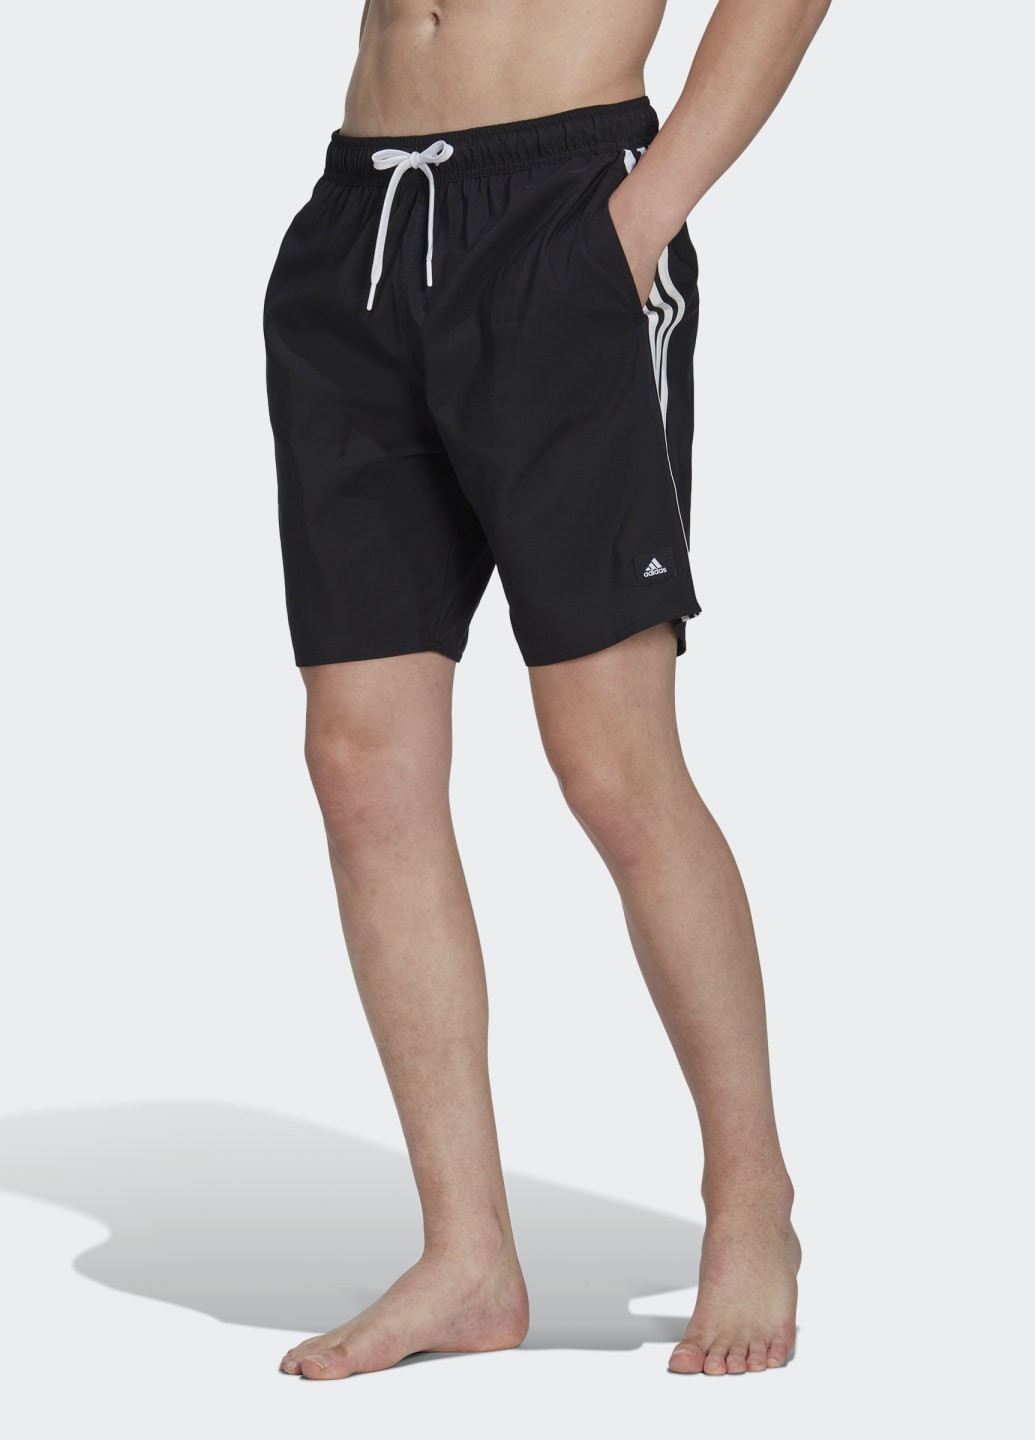 Мужские черные спортивные шорты для плавания 3-stripes clx adidas